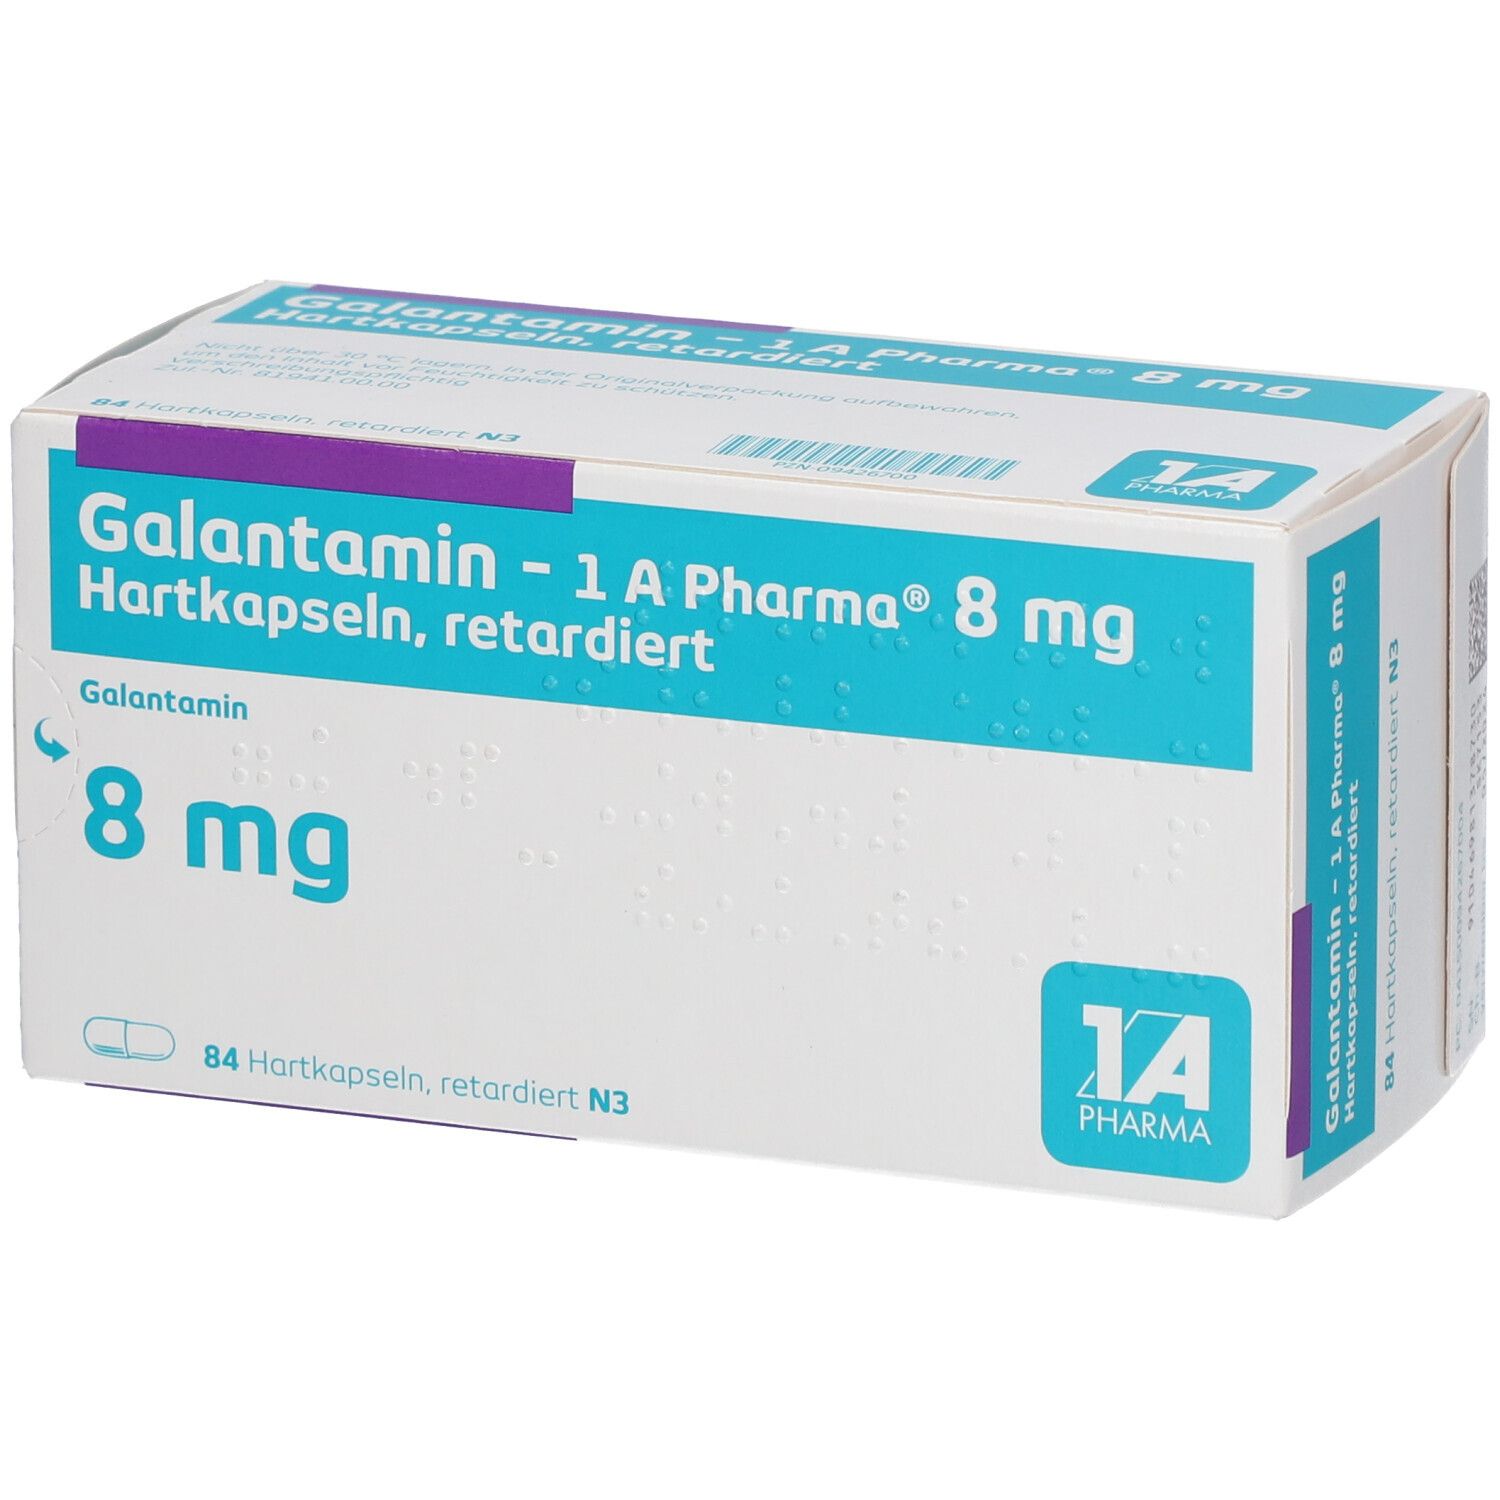 Galantamin - 1 A Pharma® 8 mg